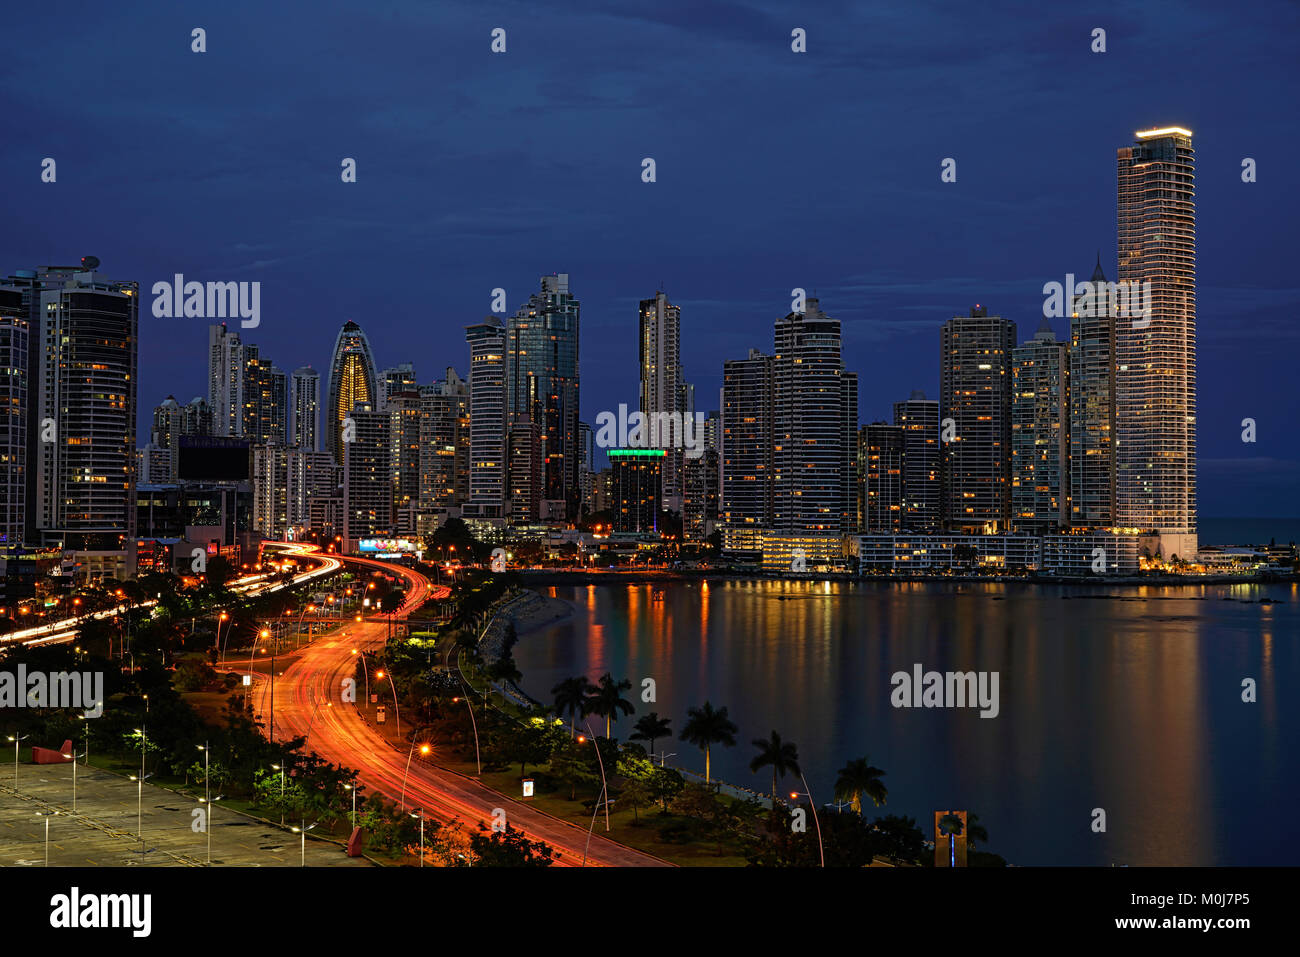 Panama vista dello skyline della citta' dalla Balboa Avenue, linea costiera (Cinta Costera). Punta Paitilla, Punta pacifica di fronte alla baia di Panama presso l'oceano pacifico. Foto Stock